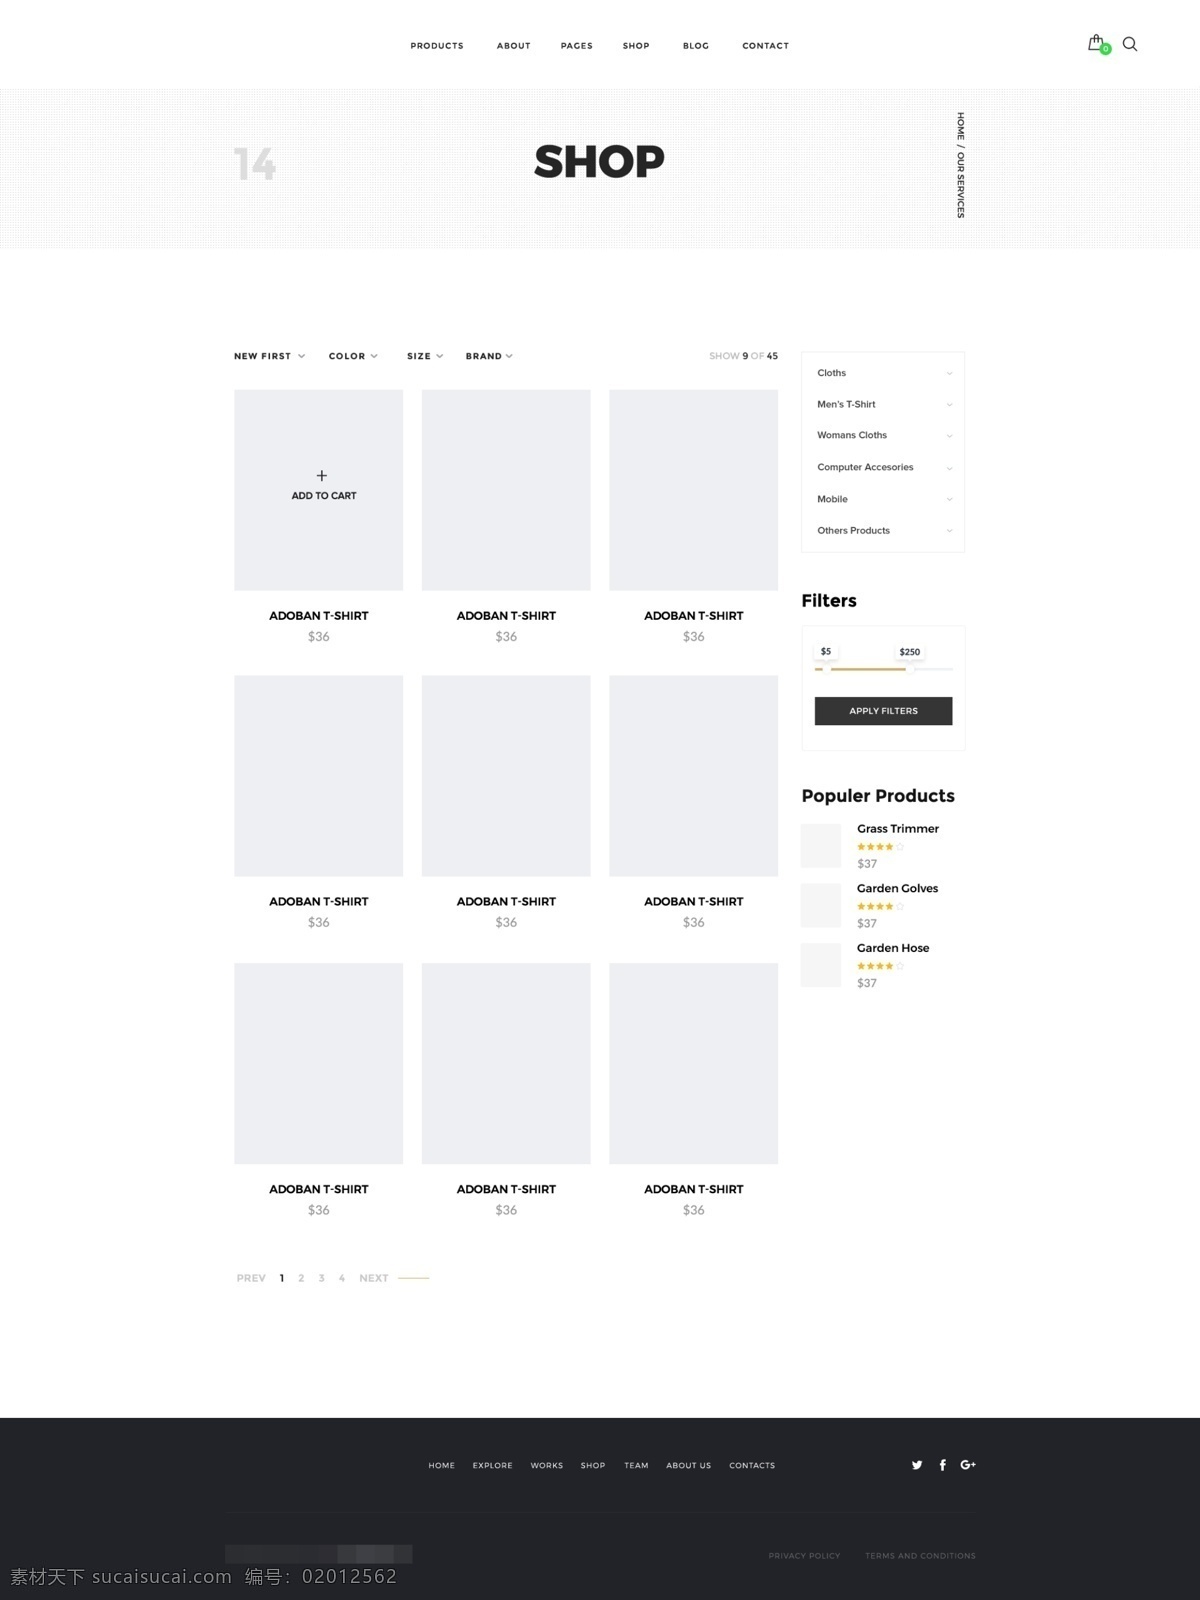 创意 机构 投资 组合 商店 应用 页面 模板 psd格式 白色 黑色 价格 简约 欧美 商品 网页界面 文字 展示